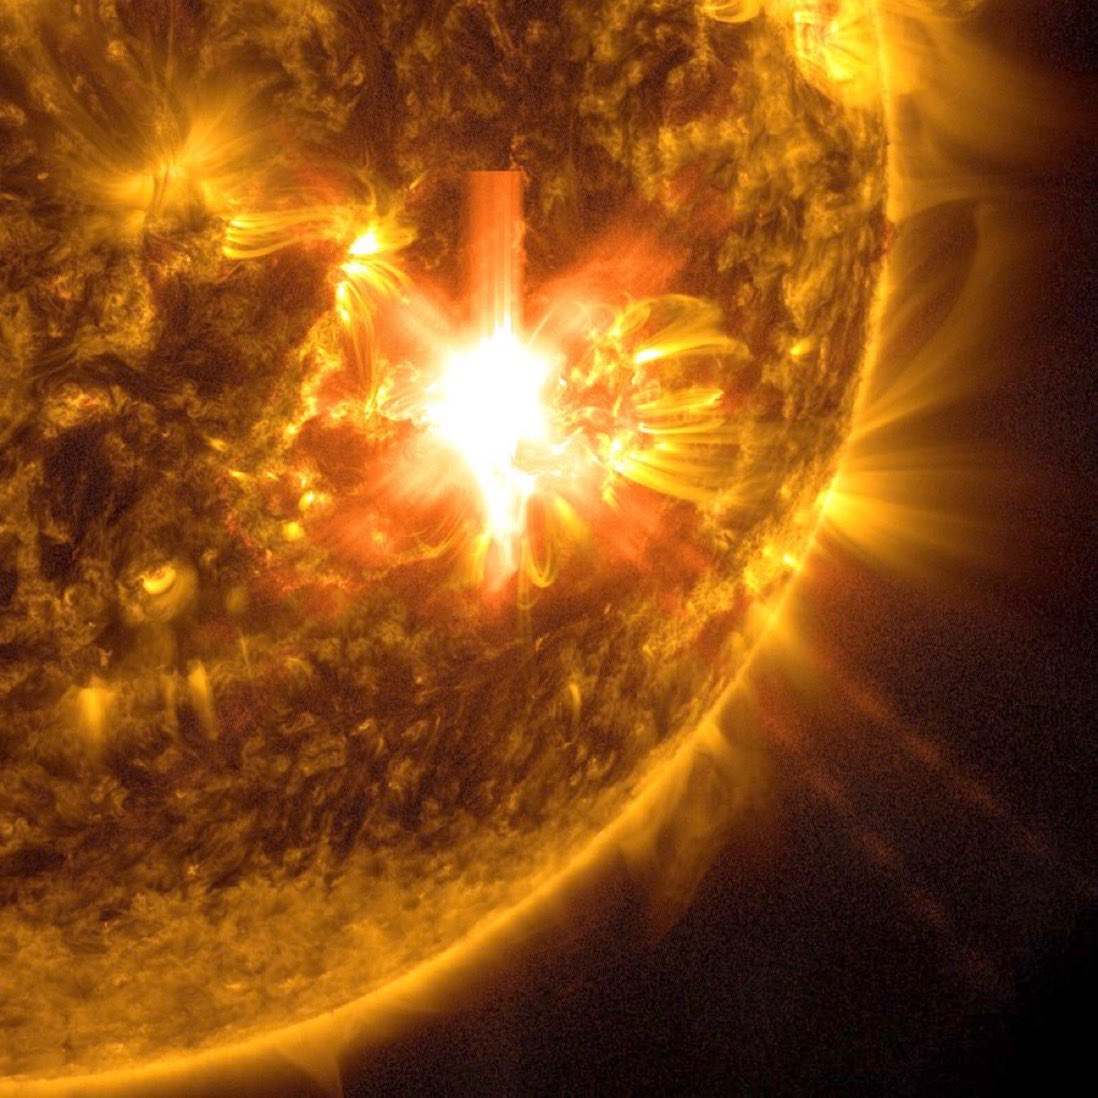 NASA, Güneş’te son 19 yılın en büyük patlamasının yaşandığını duyurdu ve patlamaya ilişkin fotoğrafı paylaştı.